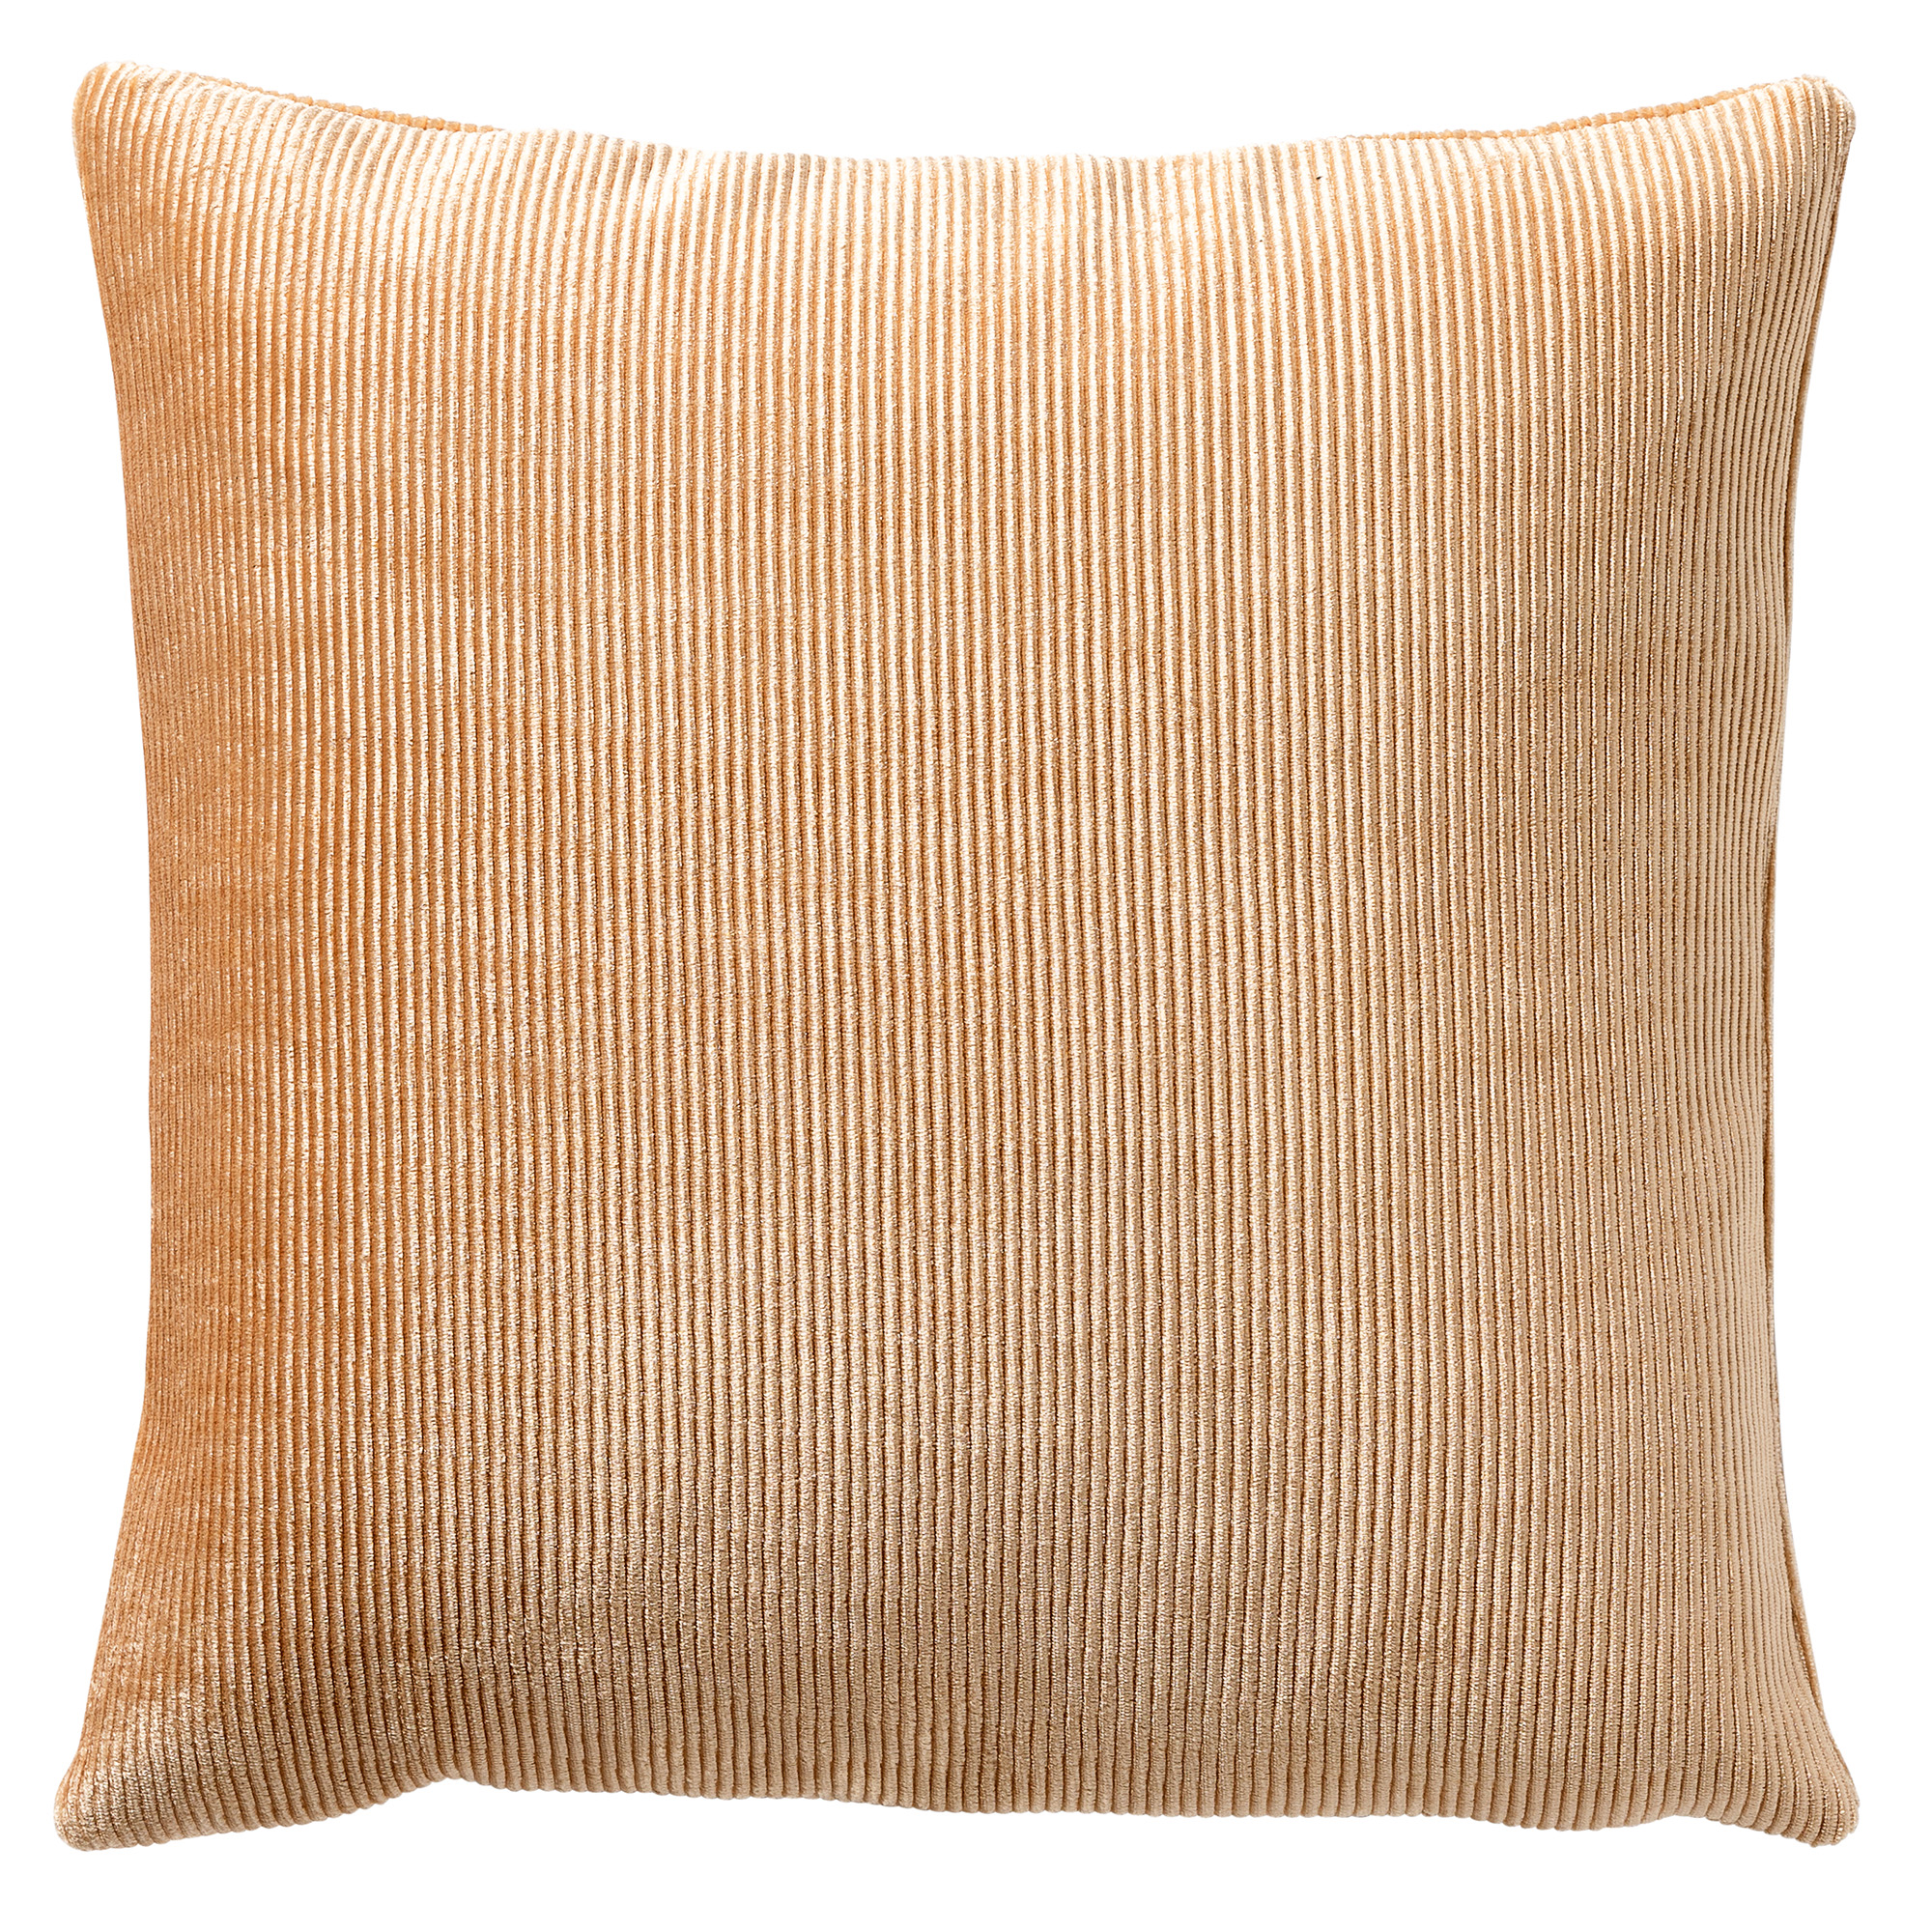 CLAUDETTE - Cushion 45x45 cm - Almond Buff - brown